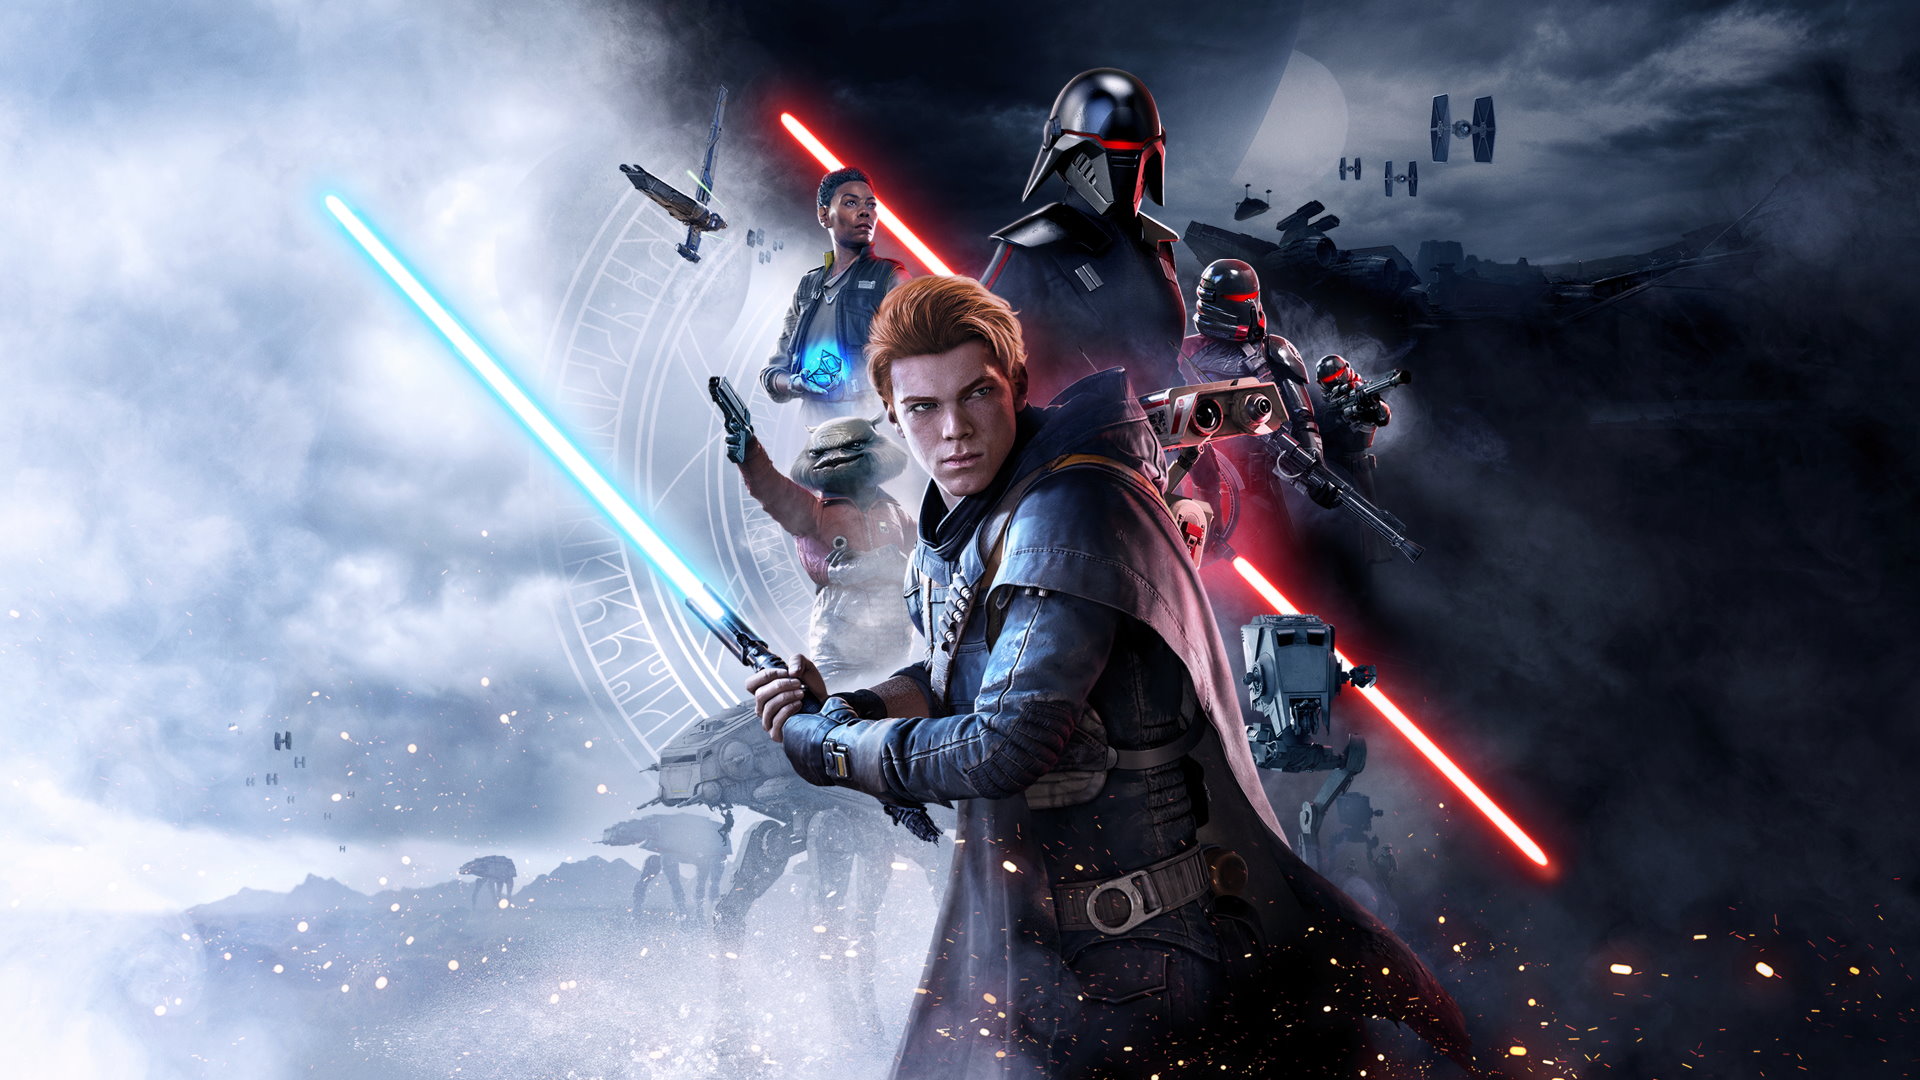 Disney Pokazal Prawdziwy Miecz Swietlny Ze Star Wars Gaming Society